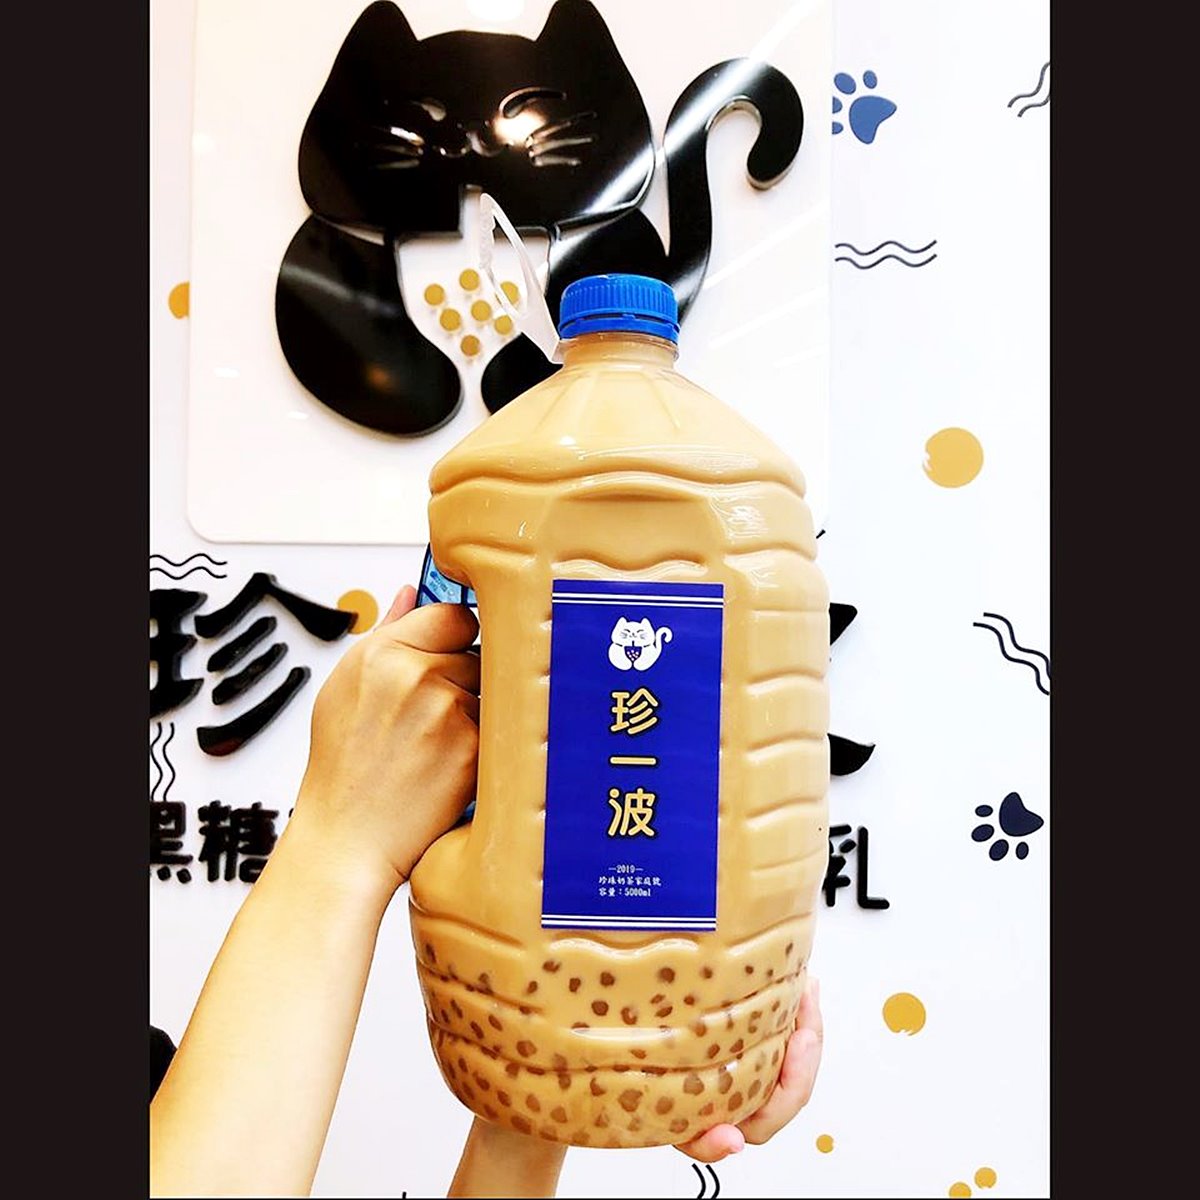 超狂「5公升珍奶」台灣喝得到！ 30分鐘喝完「家庭號珍奶」就免費